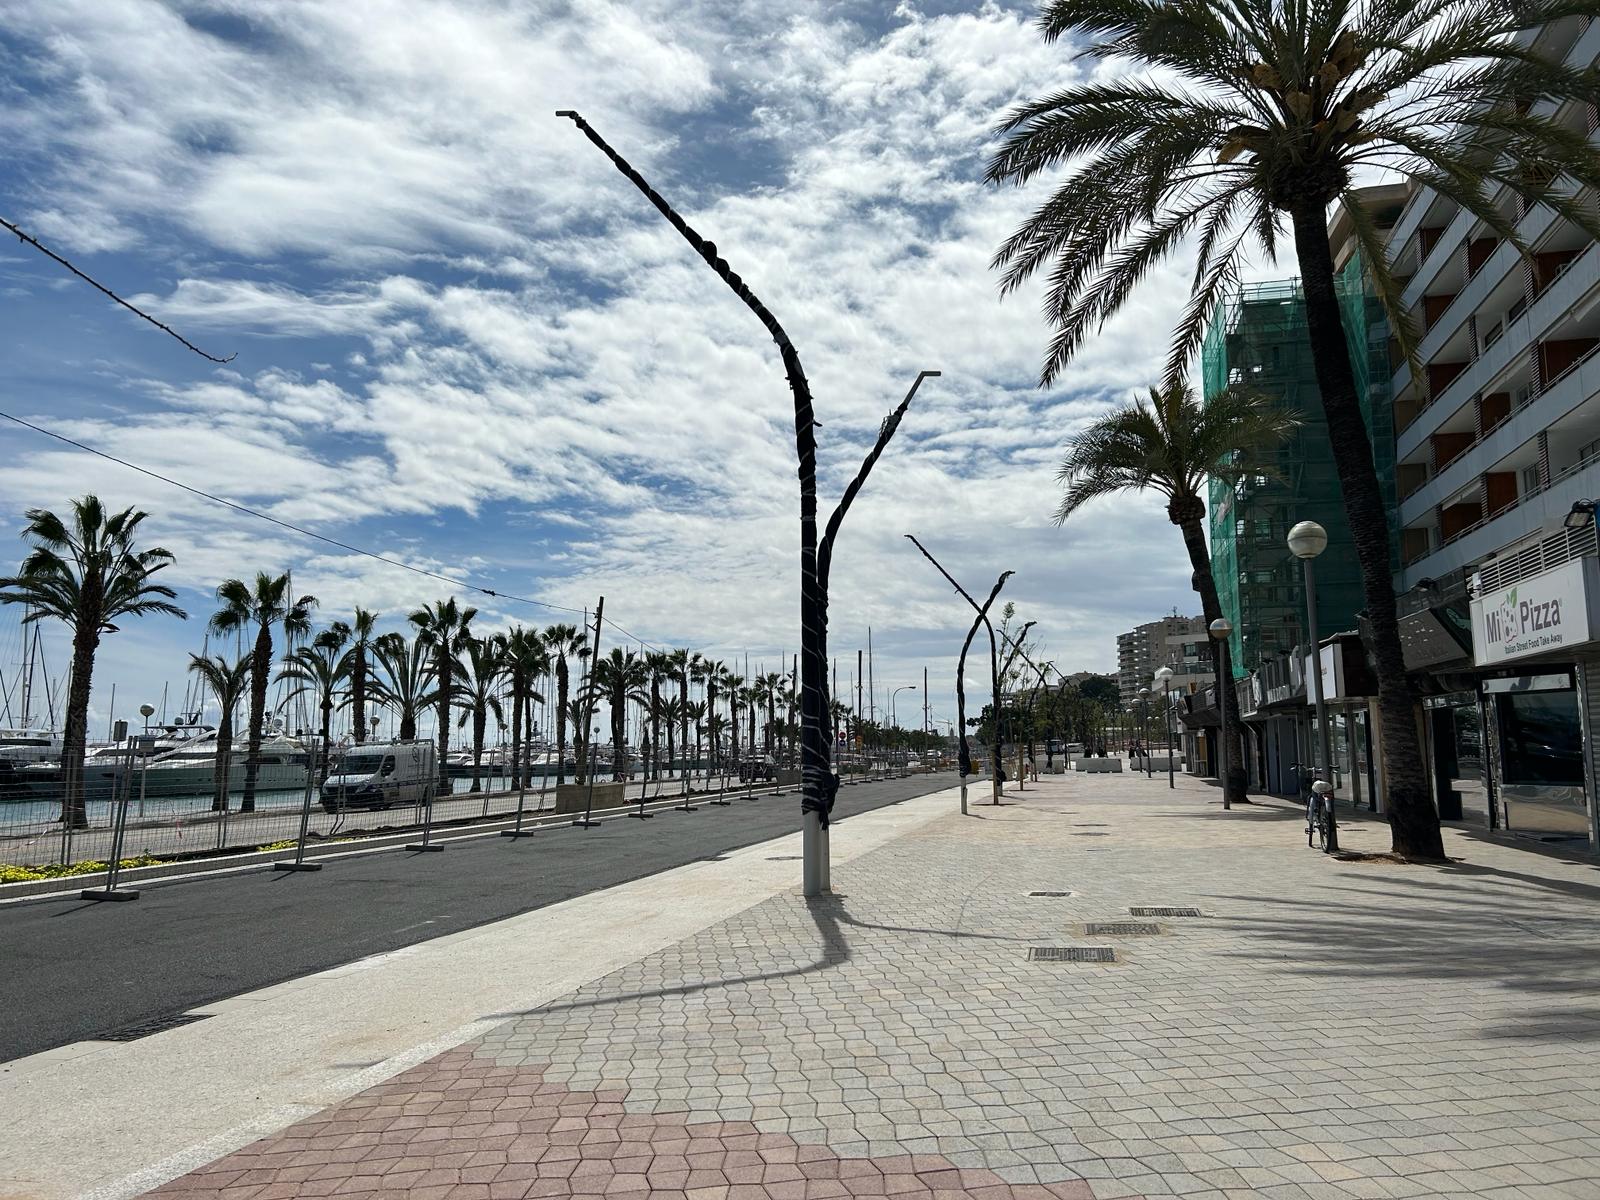 El próximo 25 de junio se abren al tráfico los dos nuevos carriles del paseo Marítimo de Palma en dirección Portopí